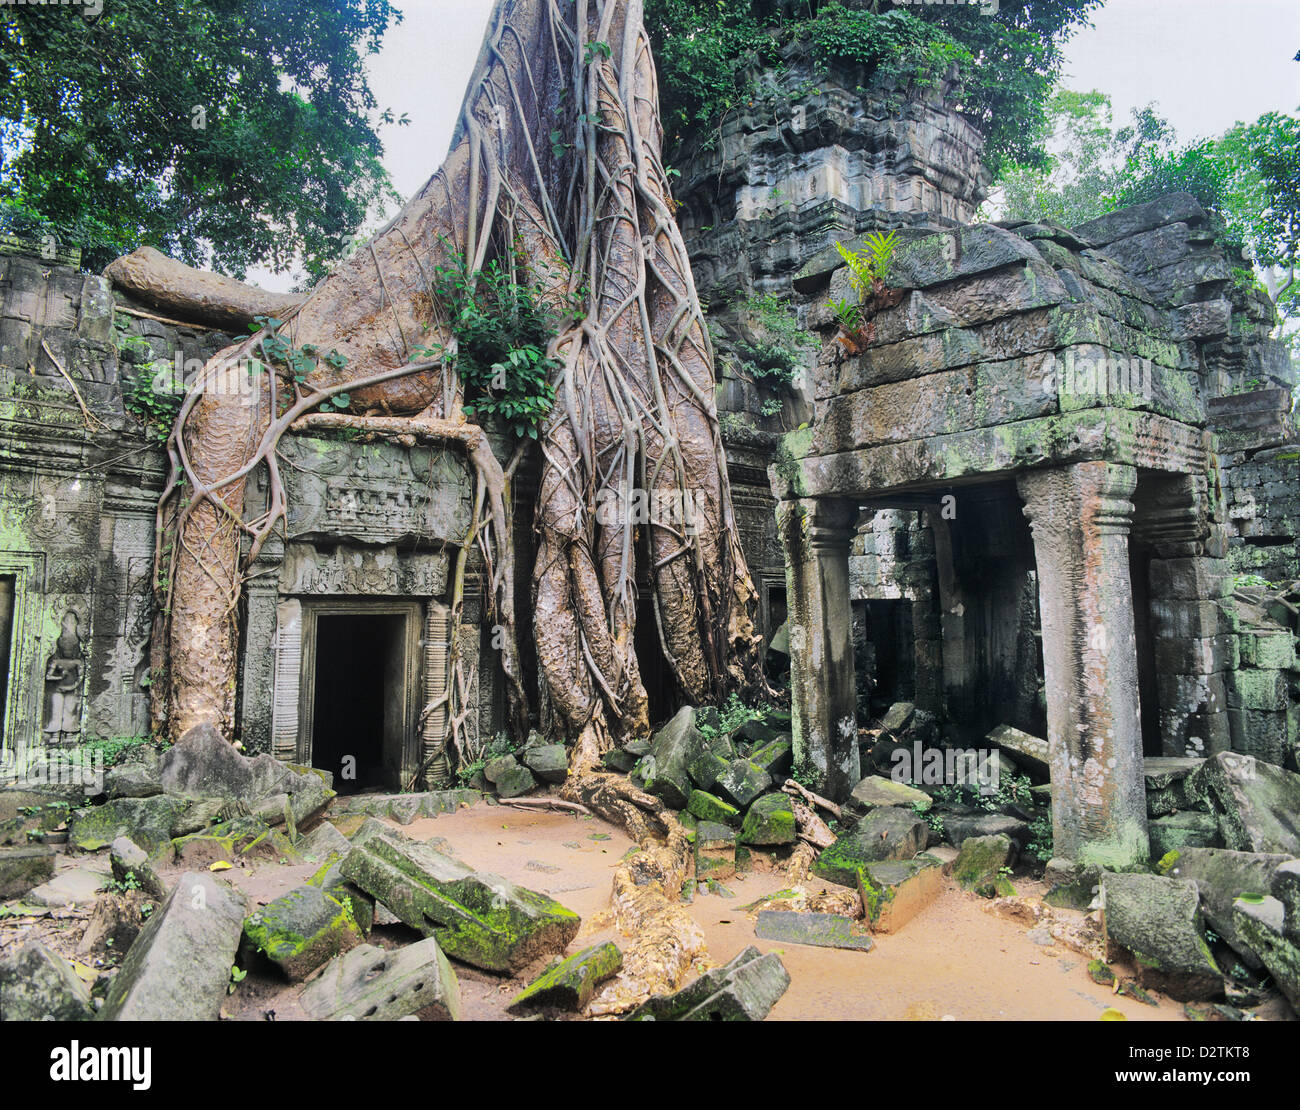 Kambodscha, Angkor, Ta Prohm, tropischer Vegetation überwächst antiken Architektur in Ta Prohm Tempel aus dem 12. Jahrhundert Stockfoto